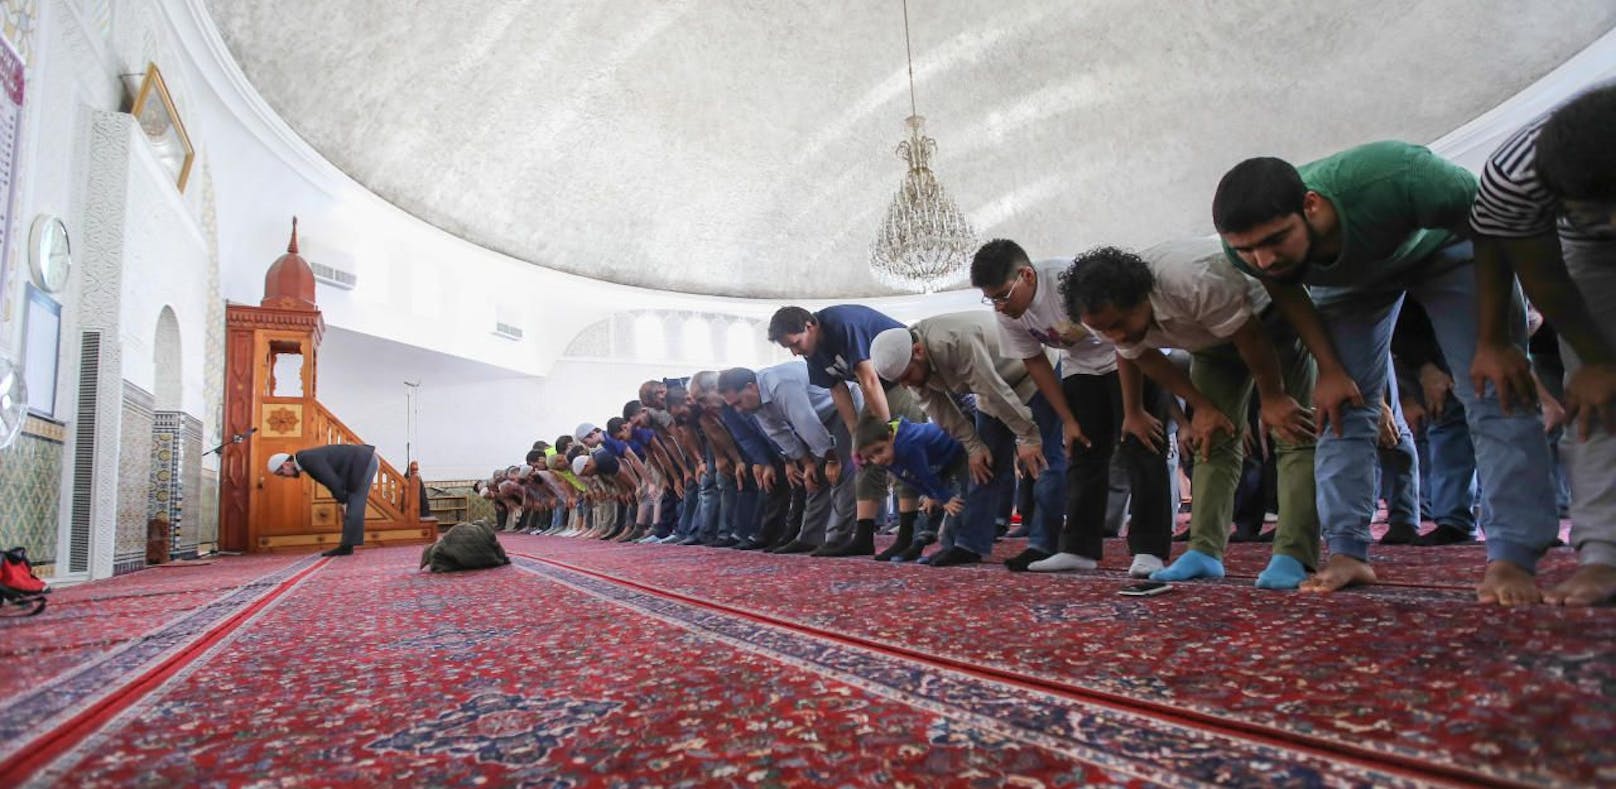 "Wollen unsere Wohnungen zu Moscheen machen"